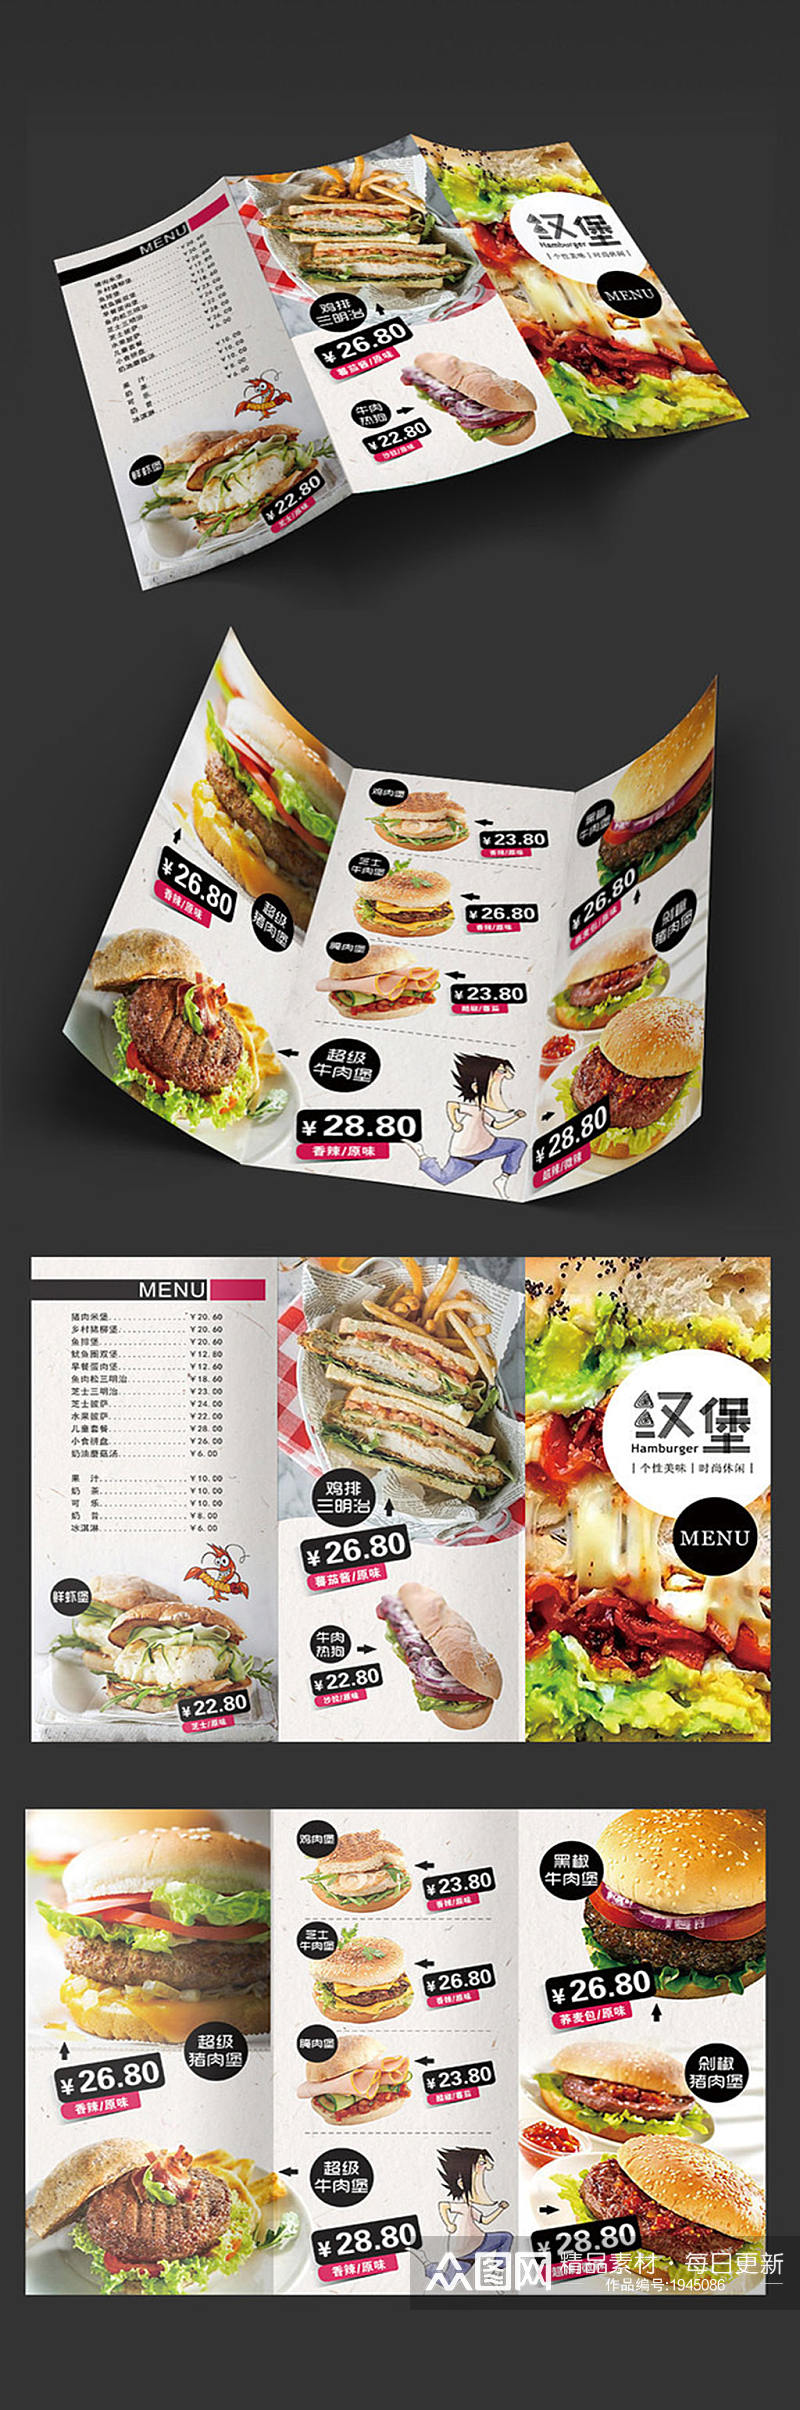 汉堡快餐折页设计素材